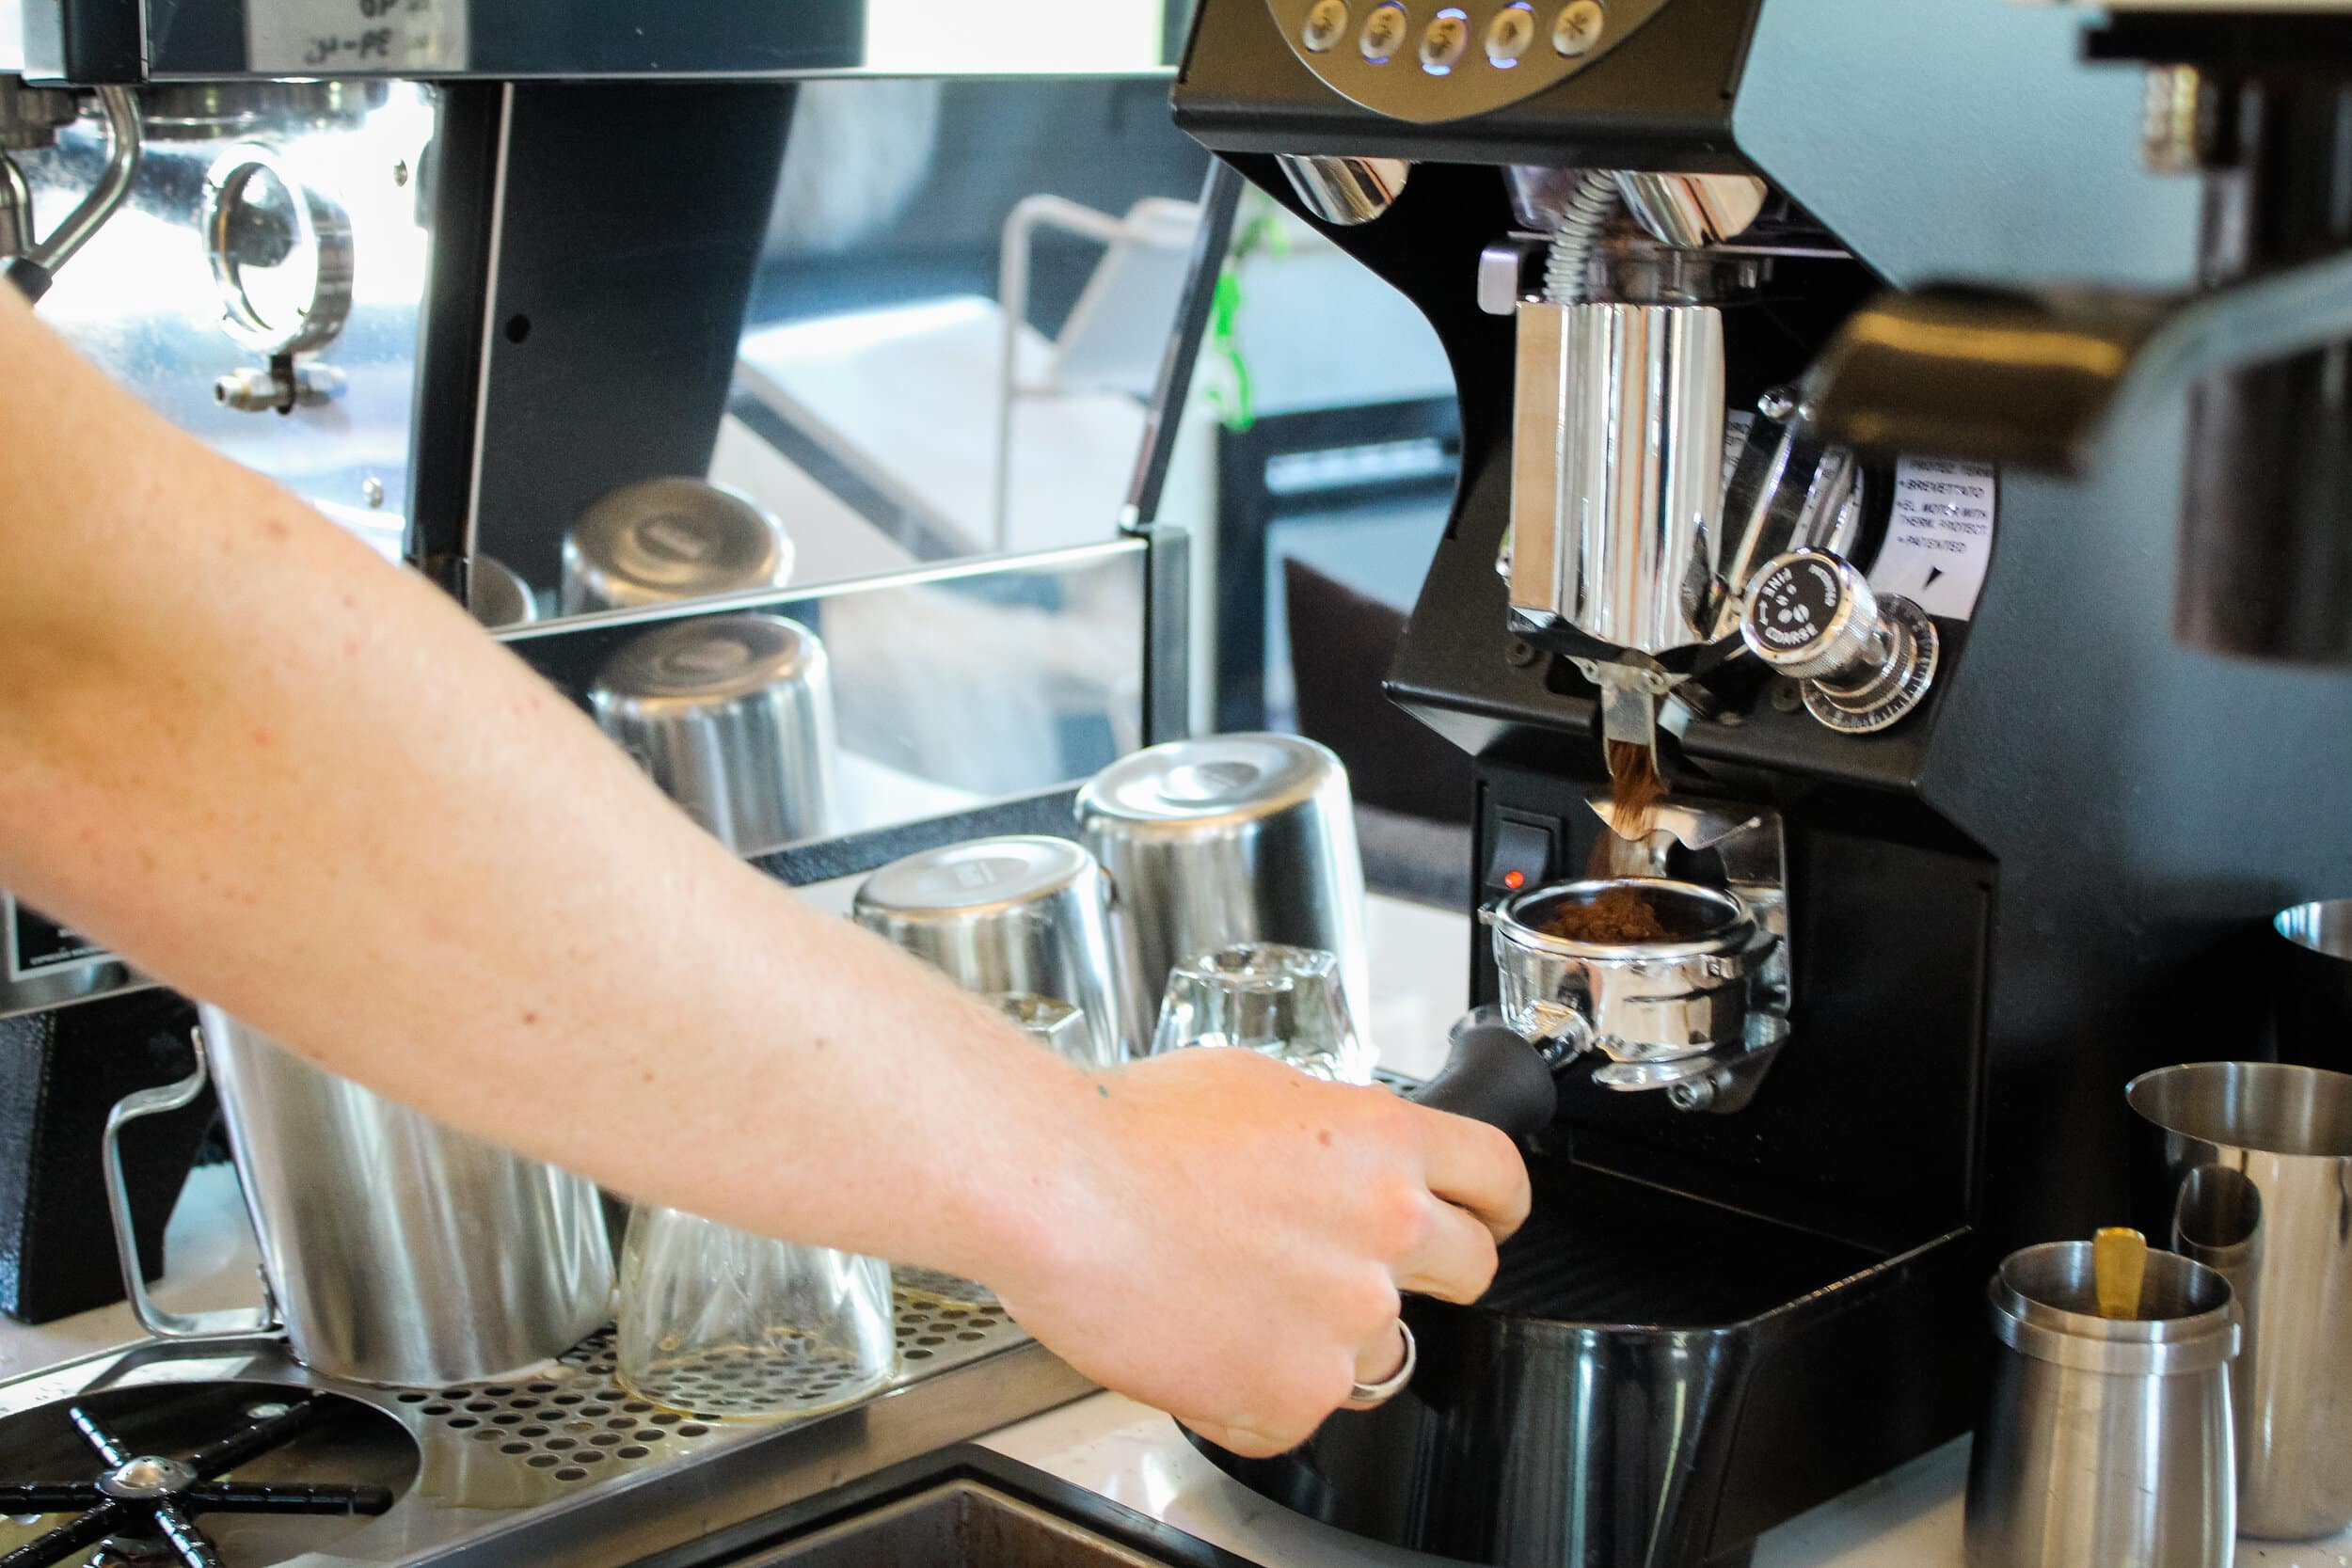 To begin making a cappuccino, the barista must prepare the espresso.